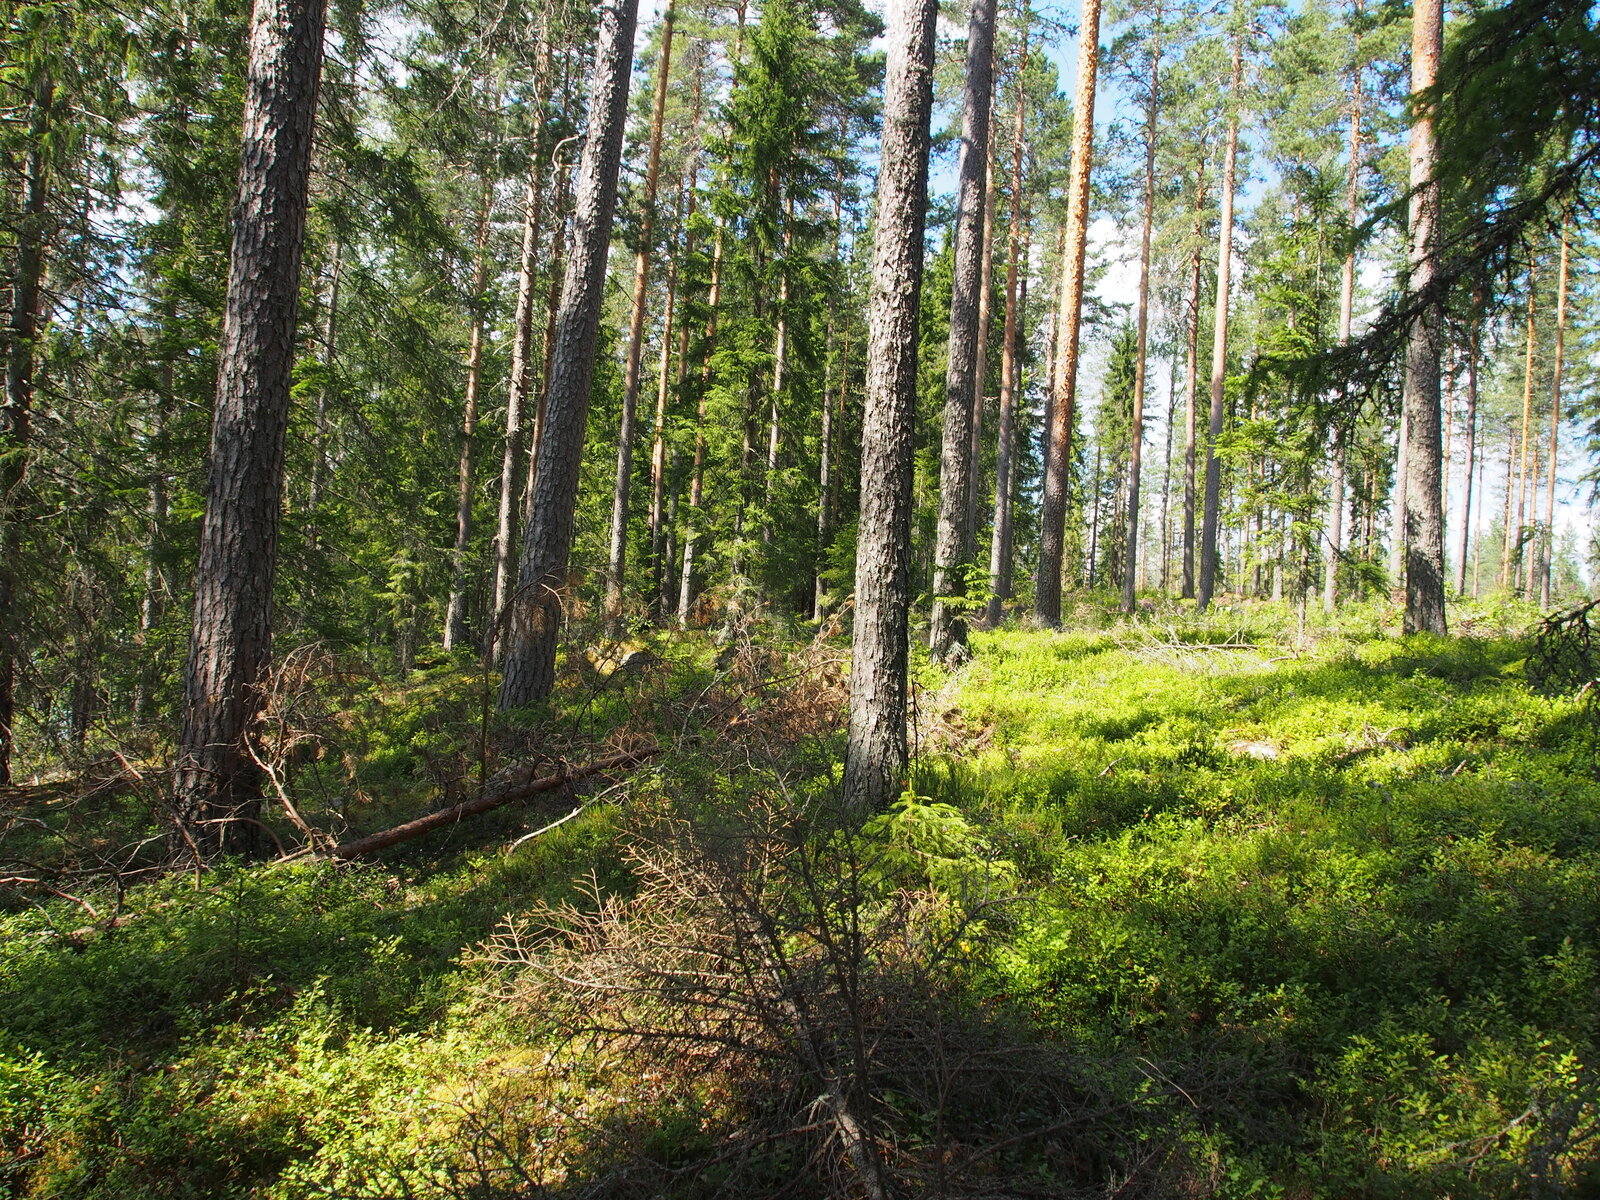 Kesäisessä havumetsässä on kaatuneita puita maassa. Aluskasvillisuutena on mustikanvarpuja.